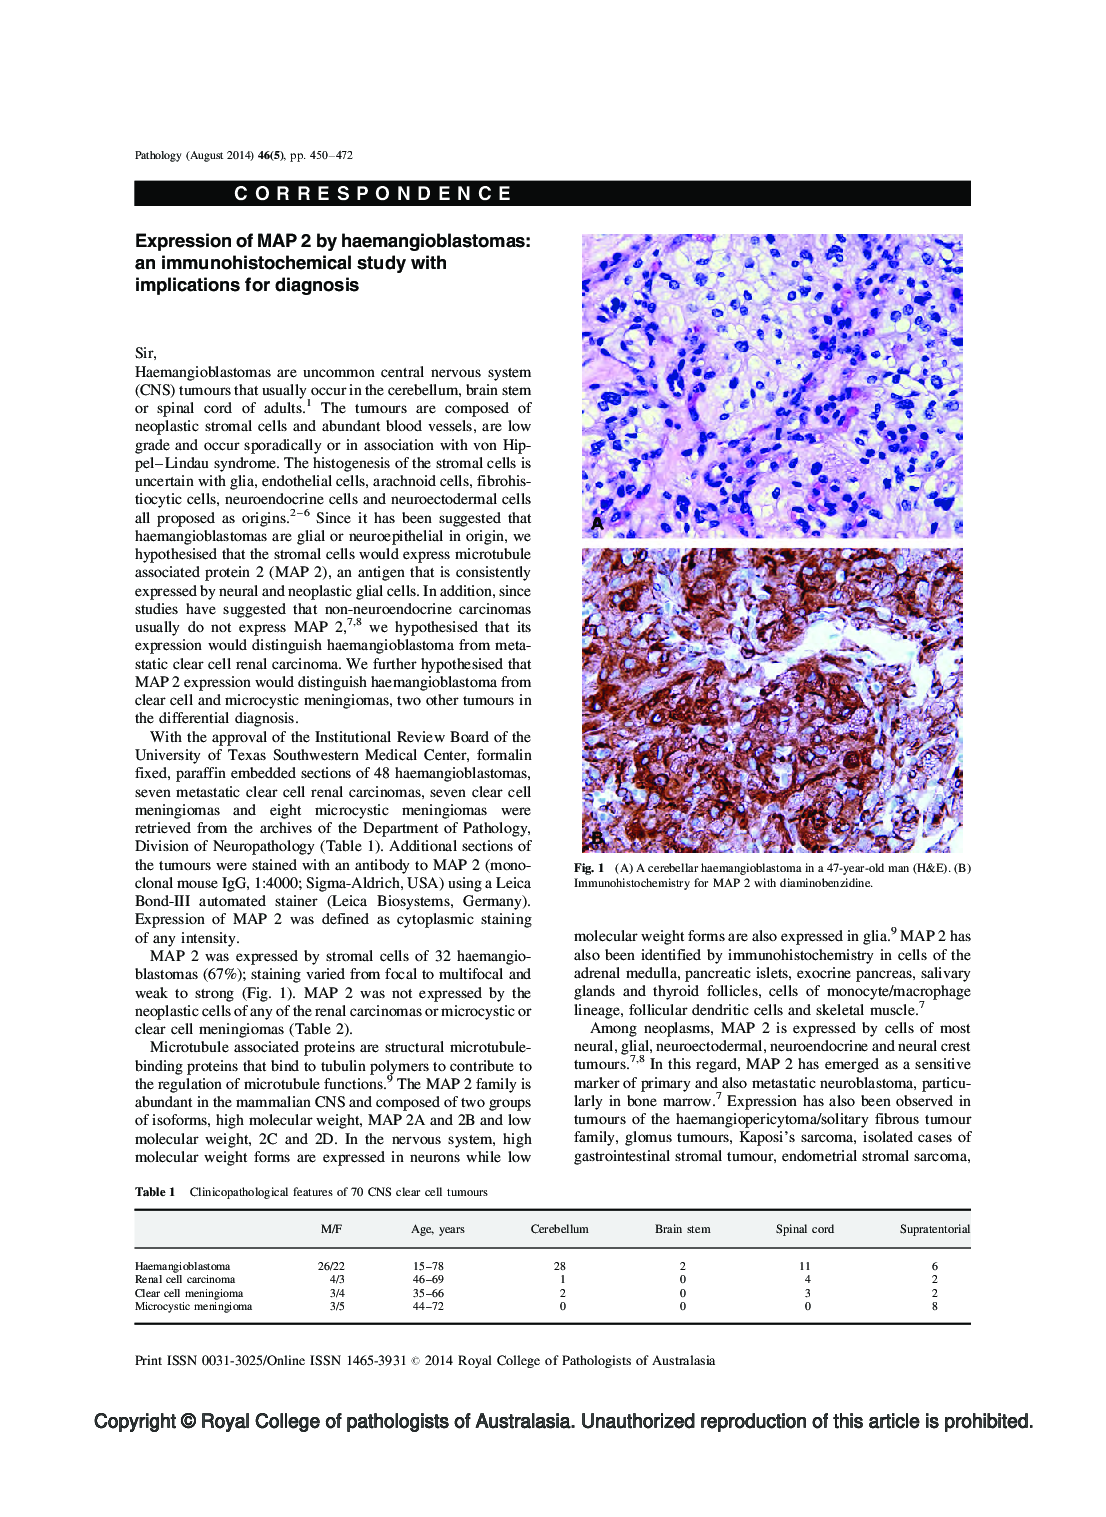 تومور سلول های اسپیندل اولیه هیپولیزین ریه با روت های غول پیکر 